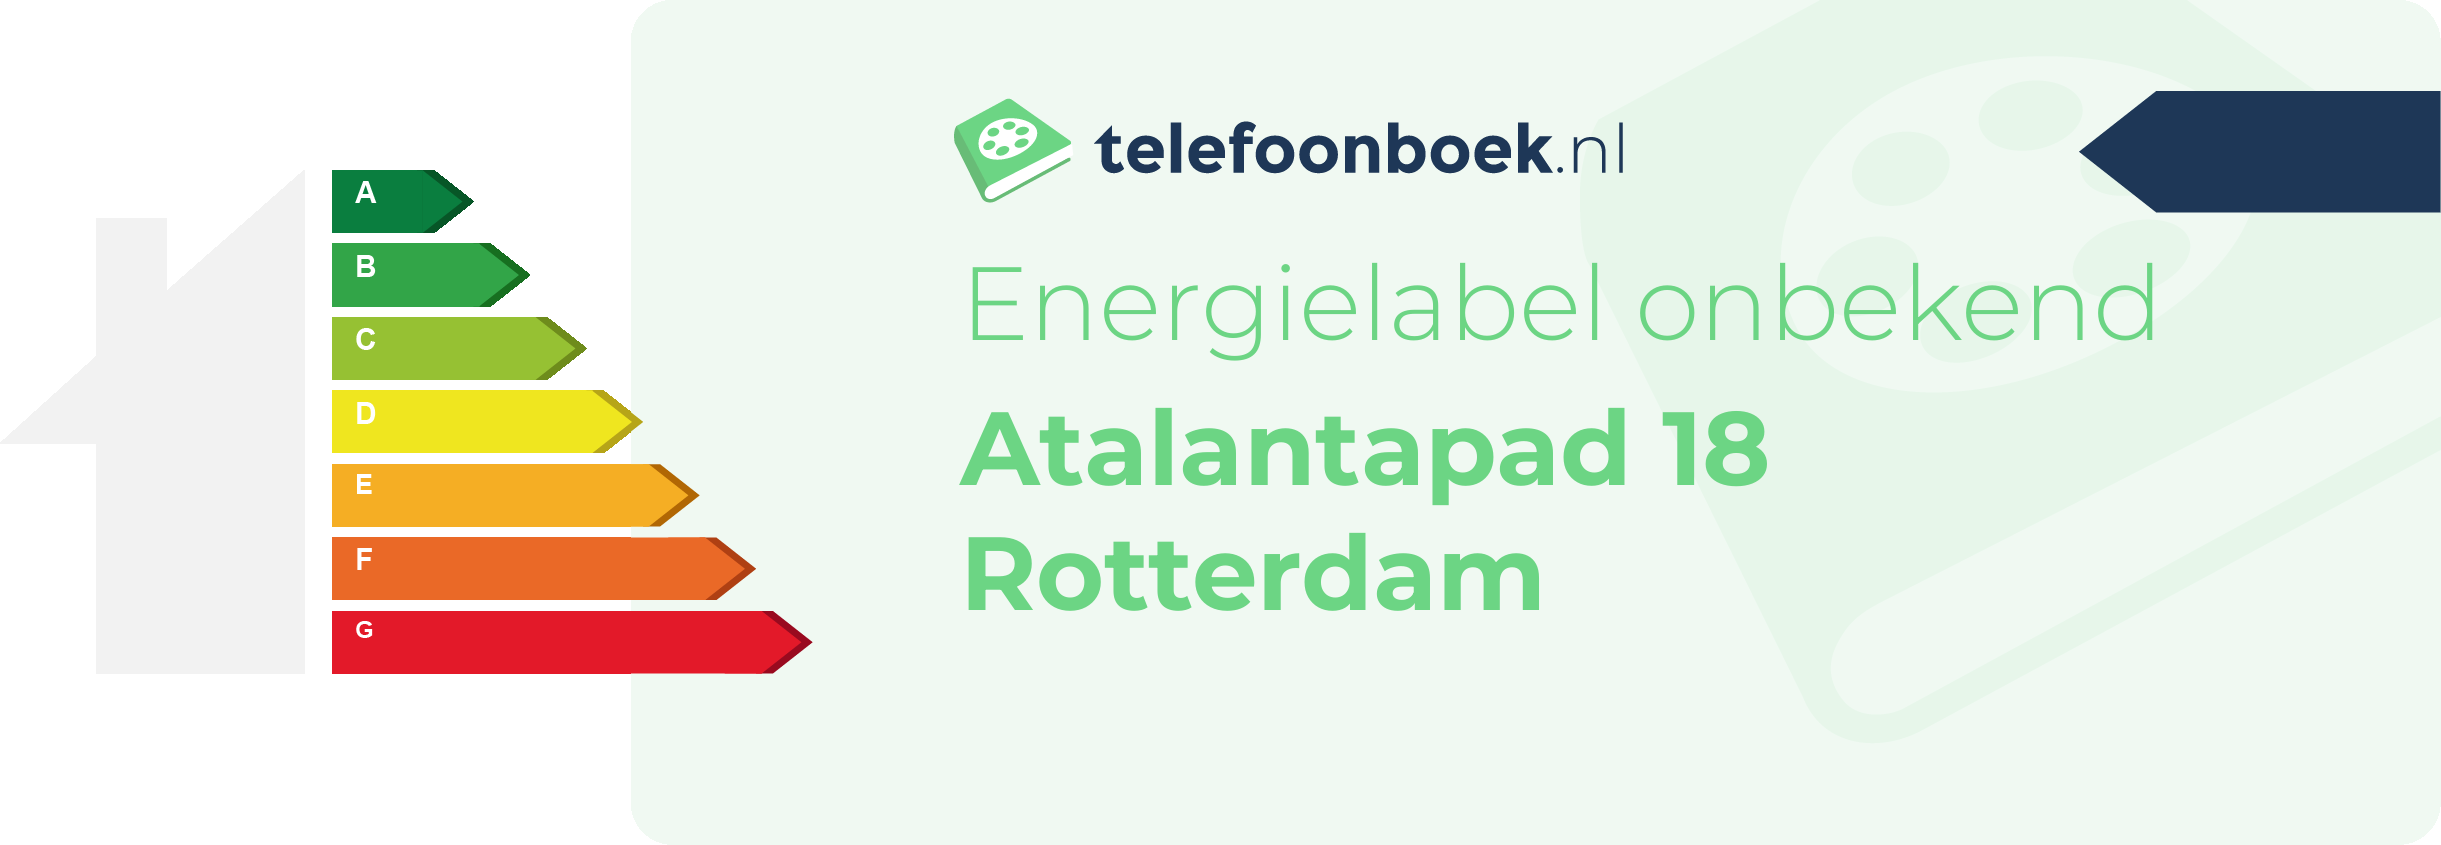 Energielabel Atalantapad 18 Rotterdam